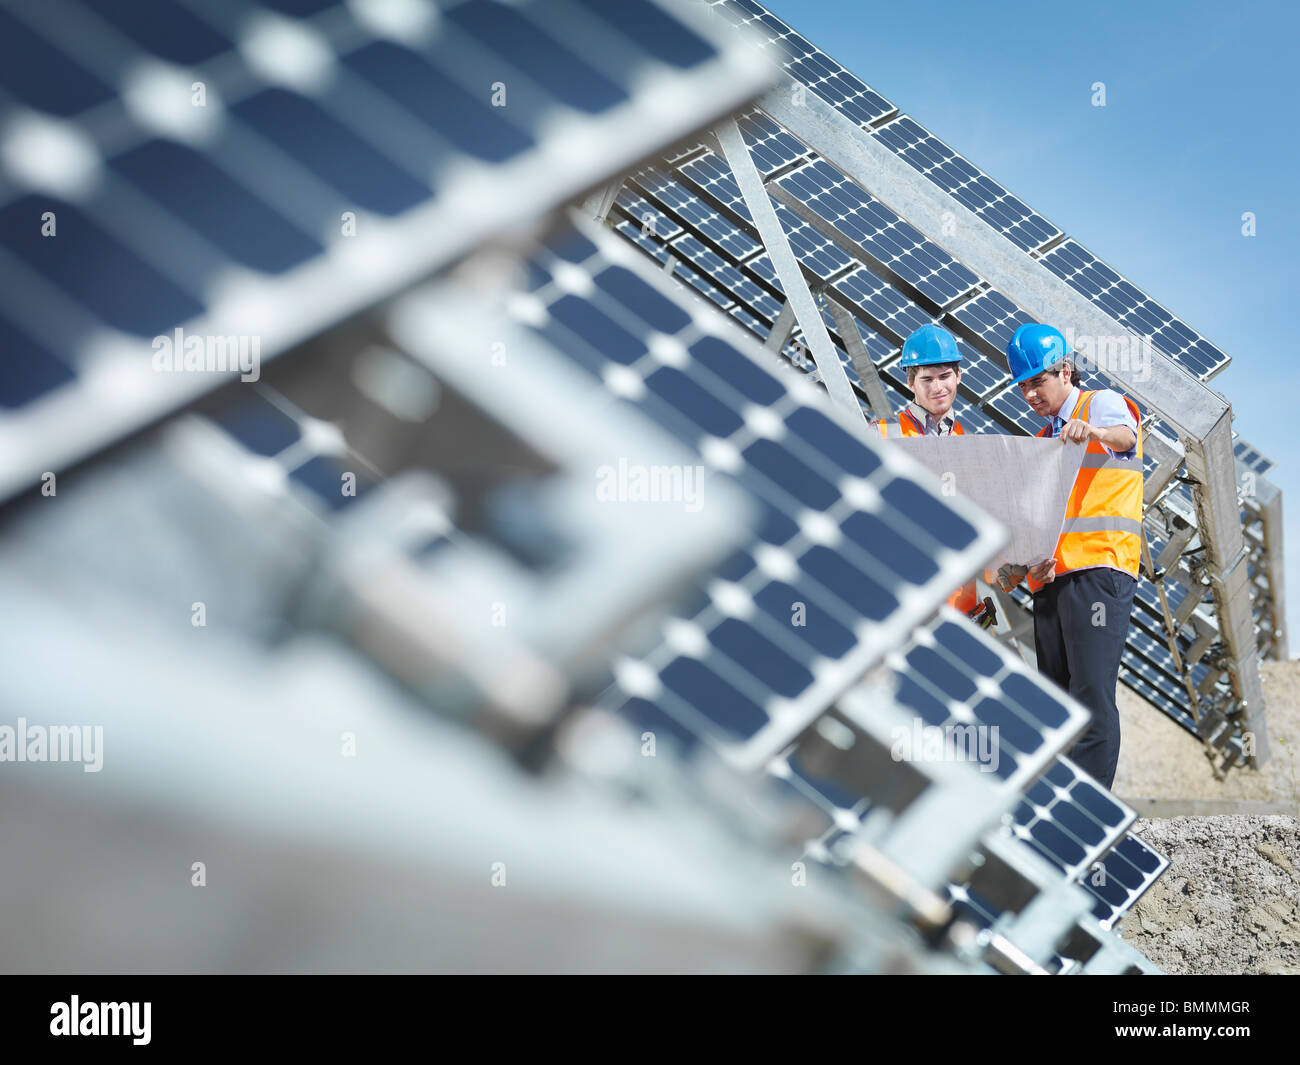 La centrale solaire d'espagnol avec les travailleurs Banque D'Images